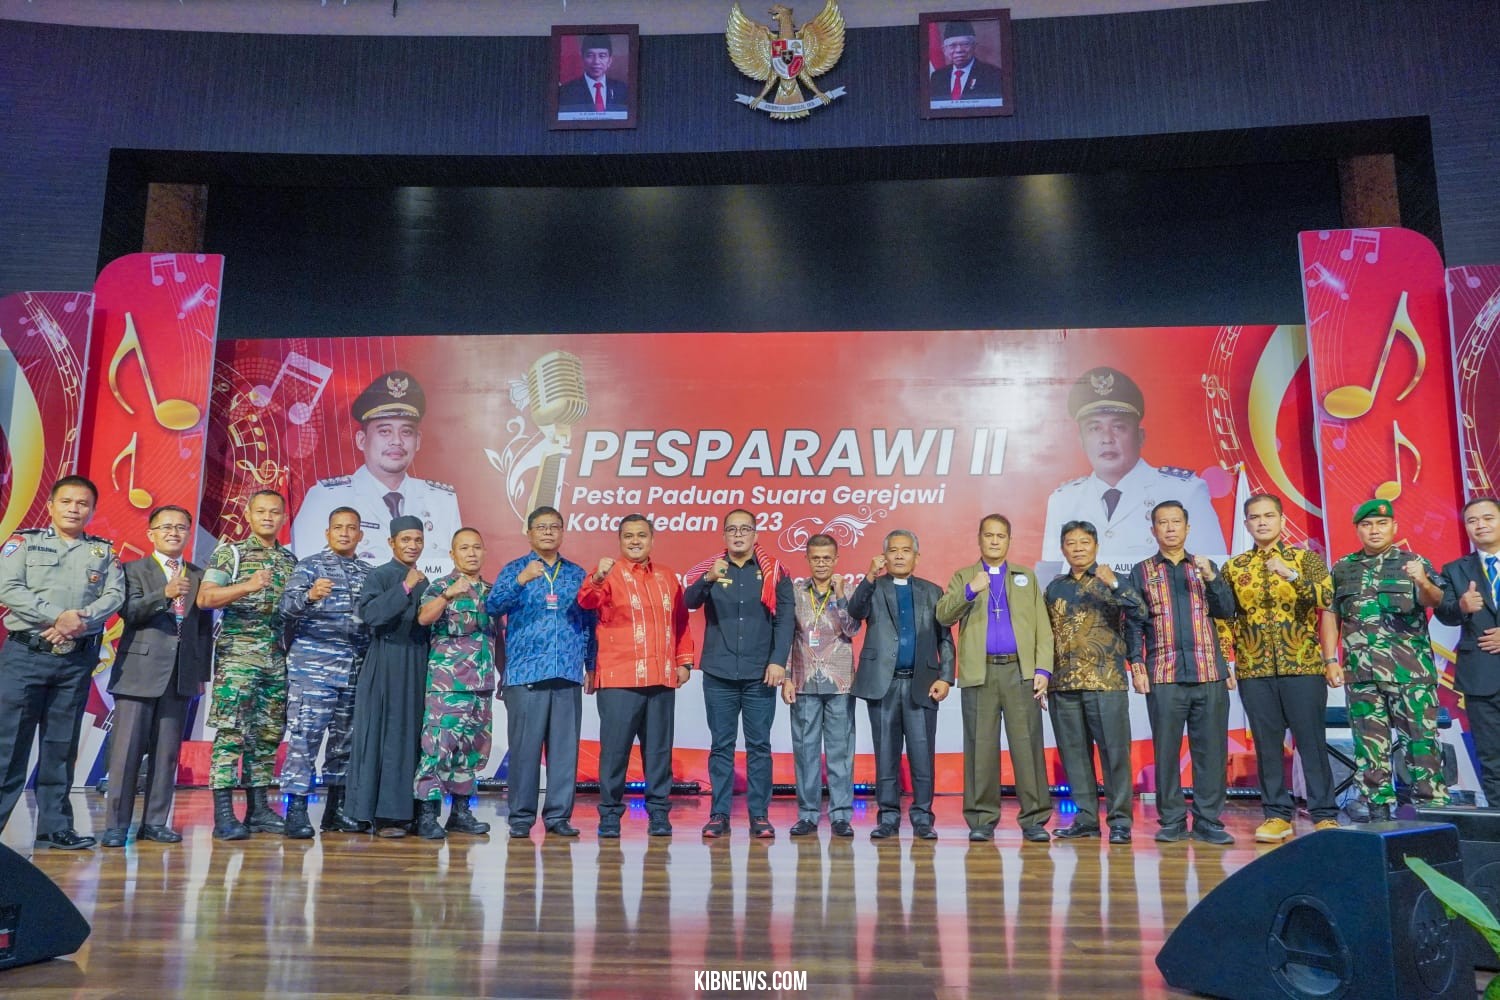 Jadikan Pesparawi Cerminan Medan Kota Multietnis